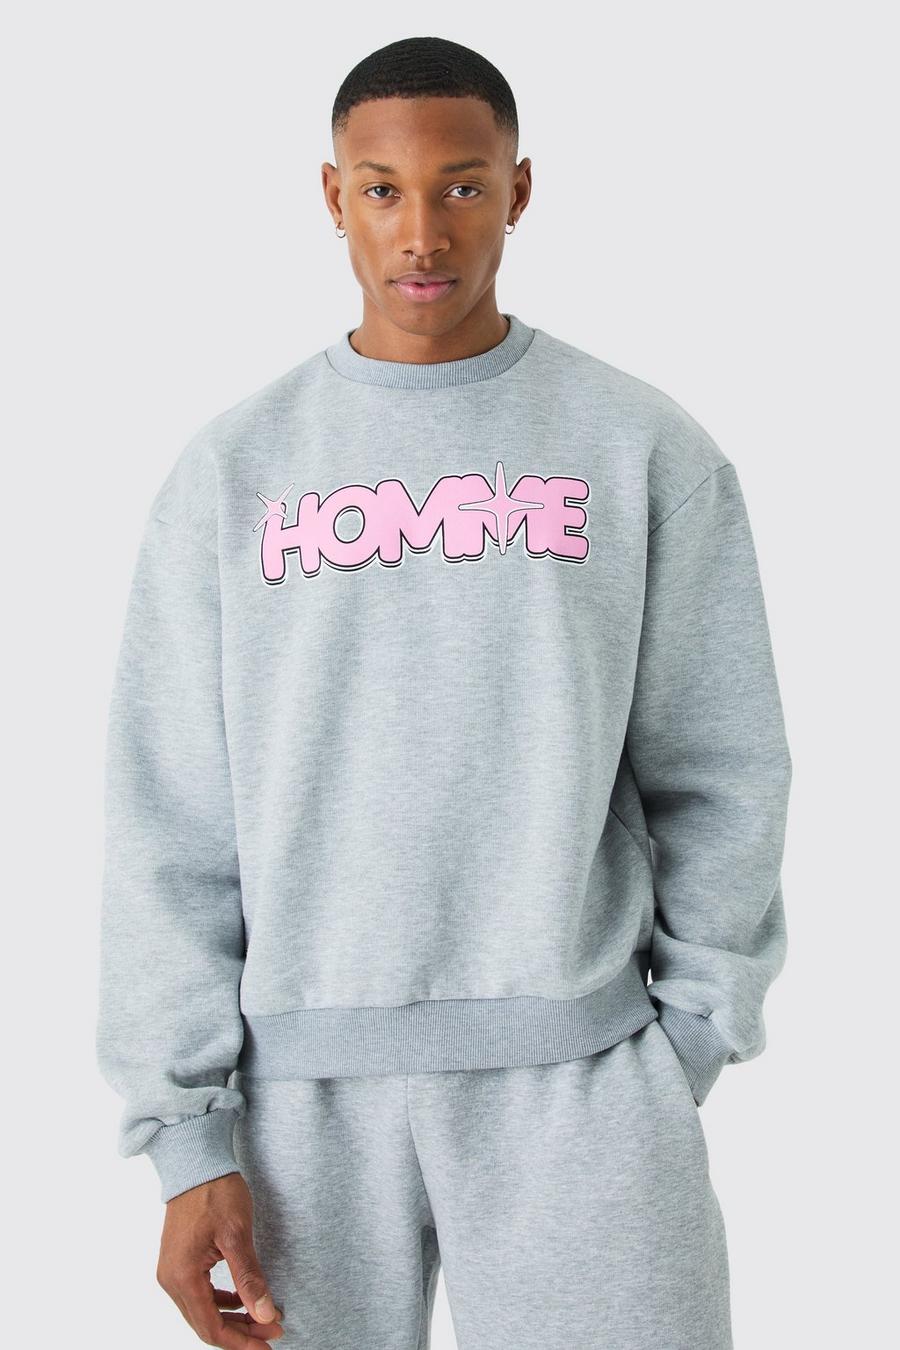 Kastiges Oversize Sweatshirt mit Homme-Print, Grey marl